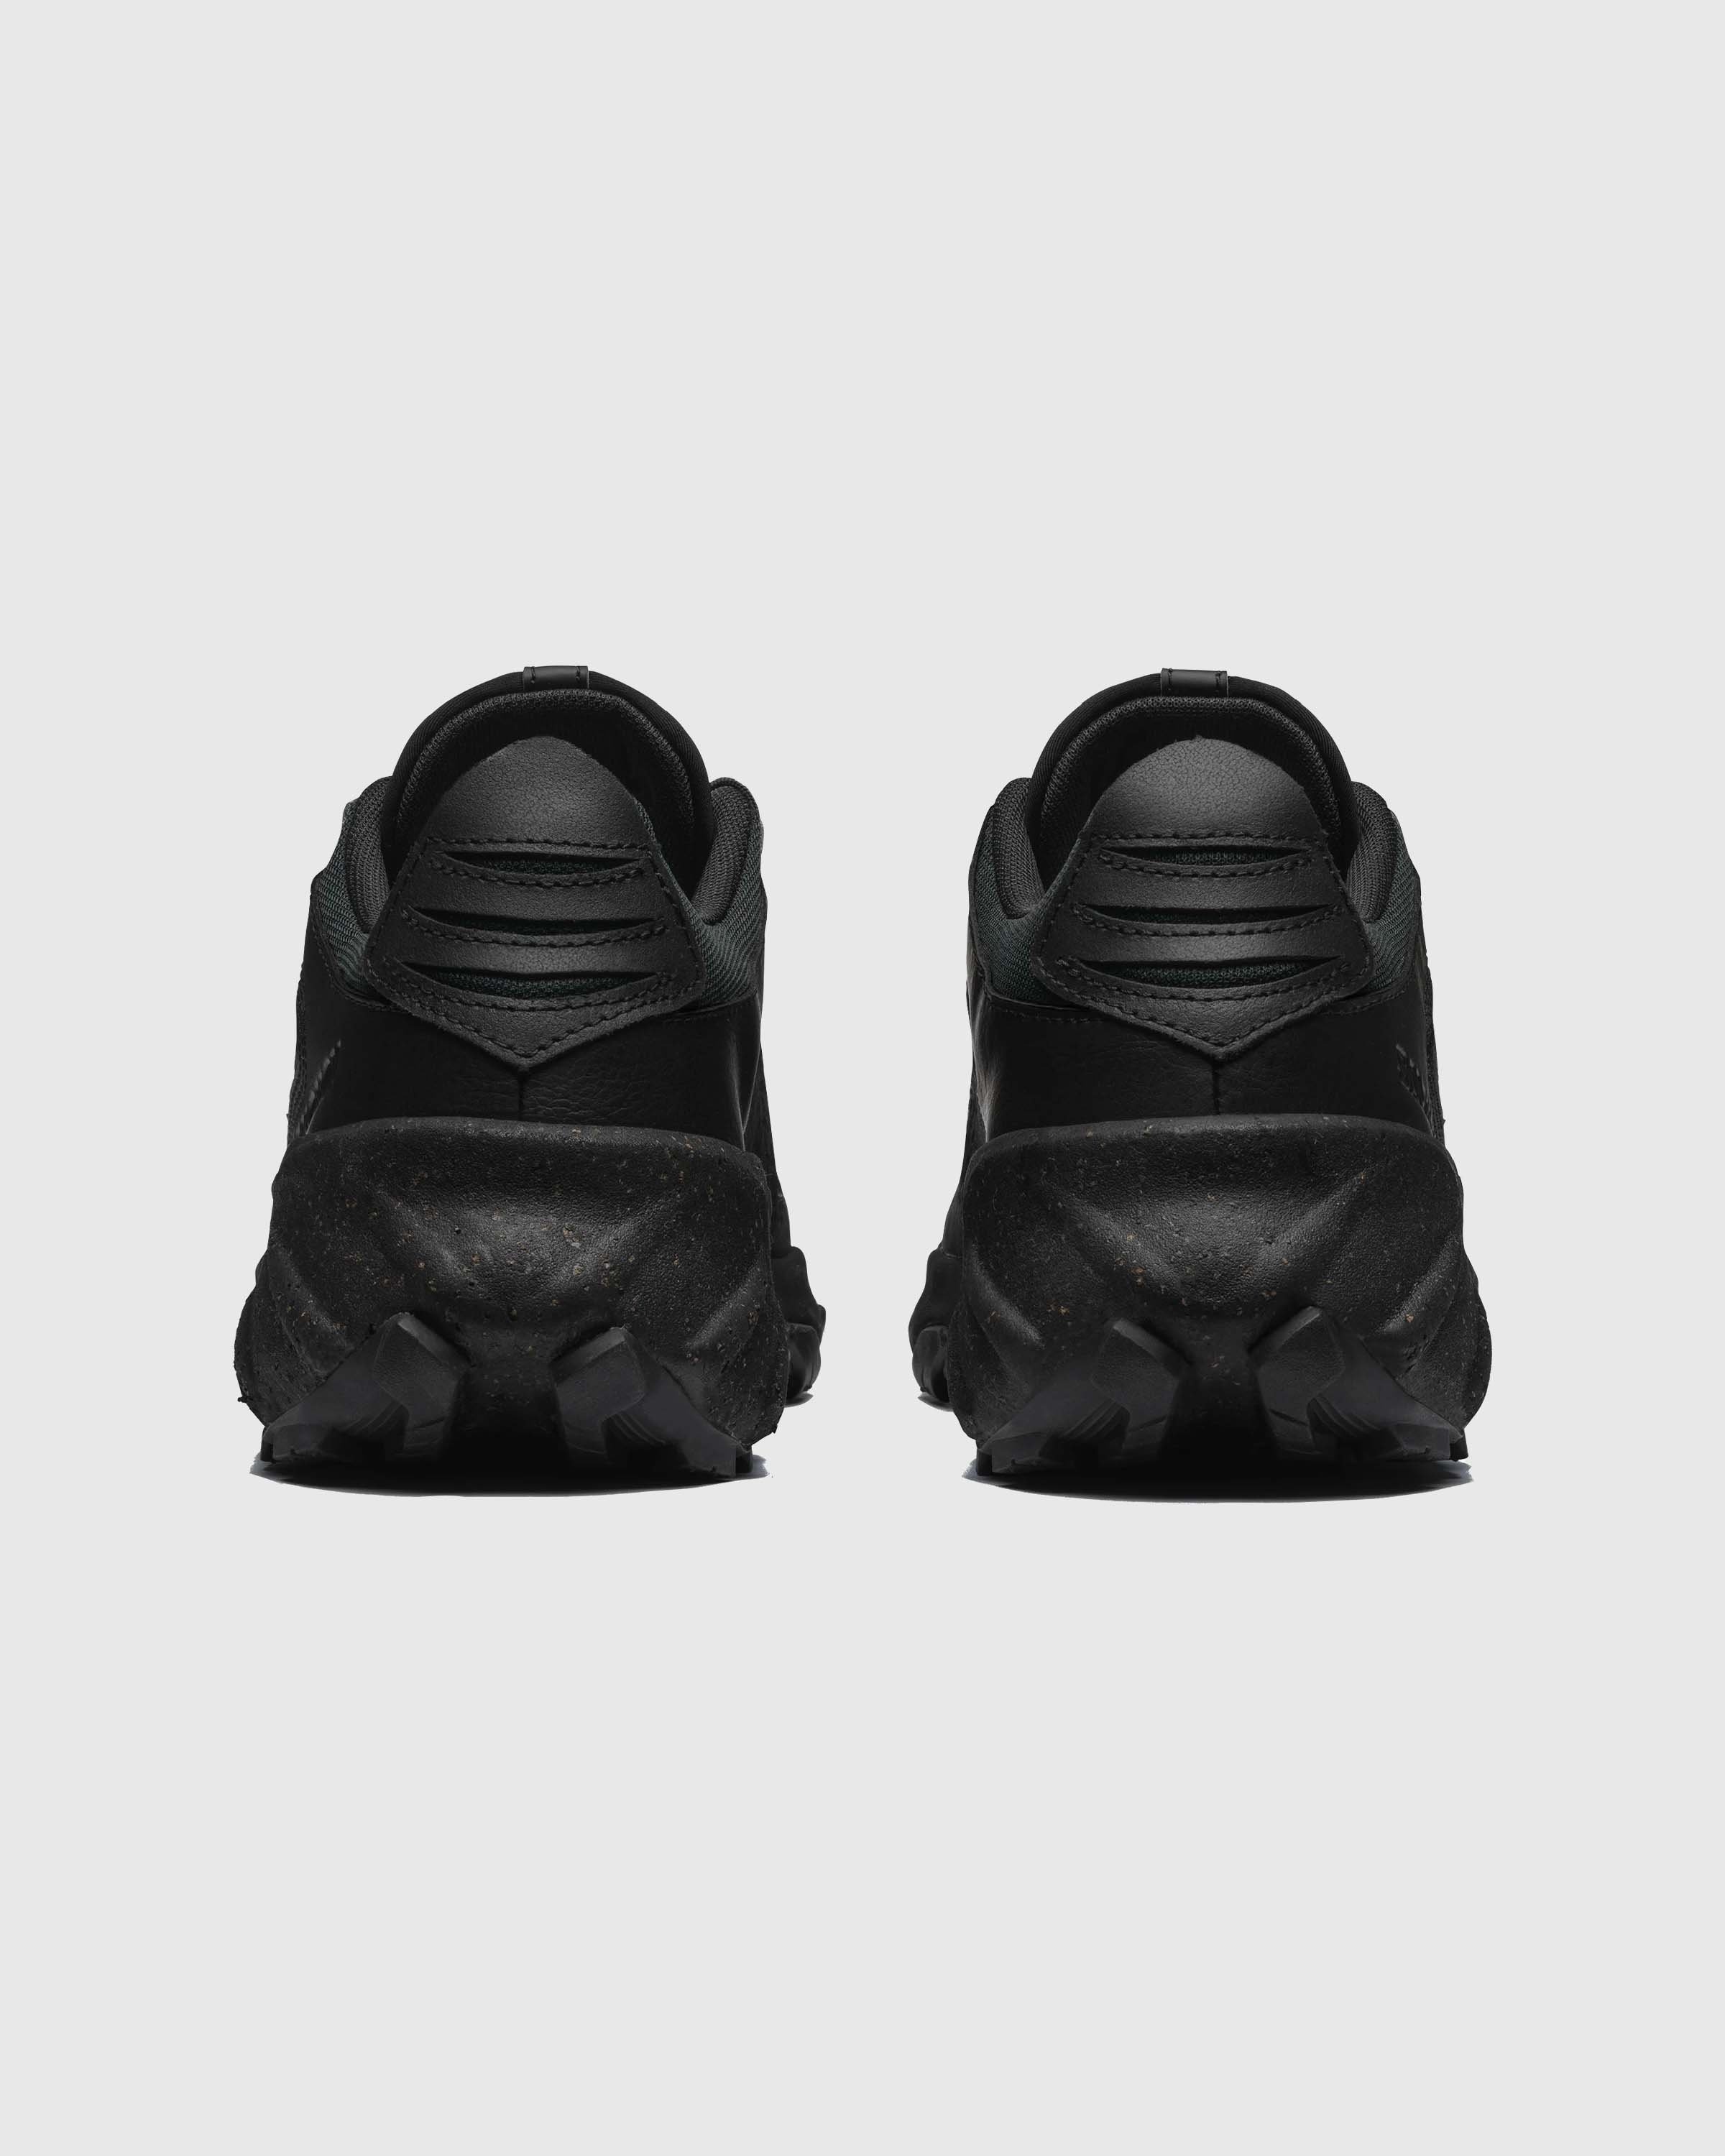 Salomon – Speedverse PRG Black/Alloy/Black - Low Top Sneakers - Black - Image 3